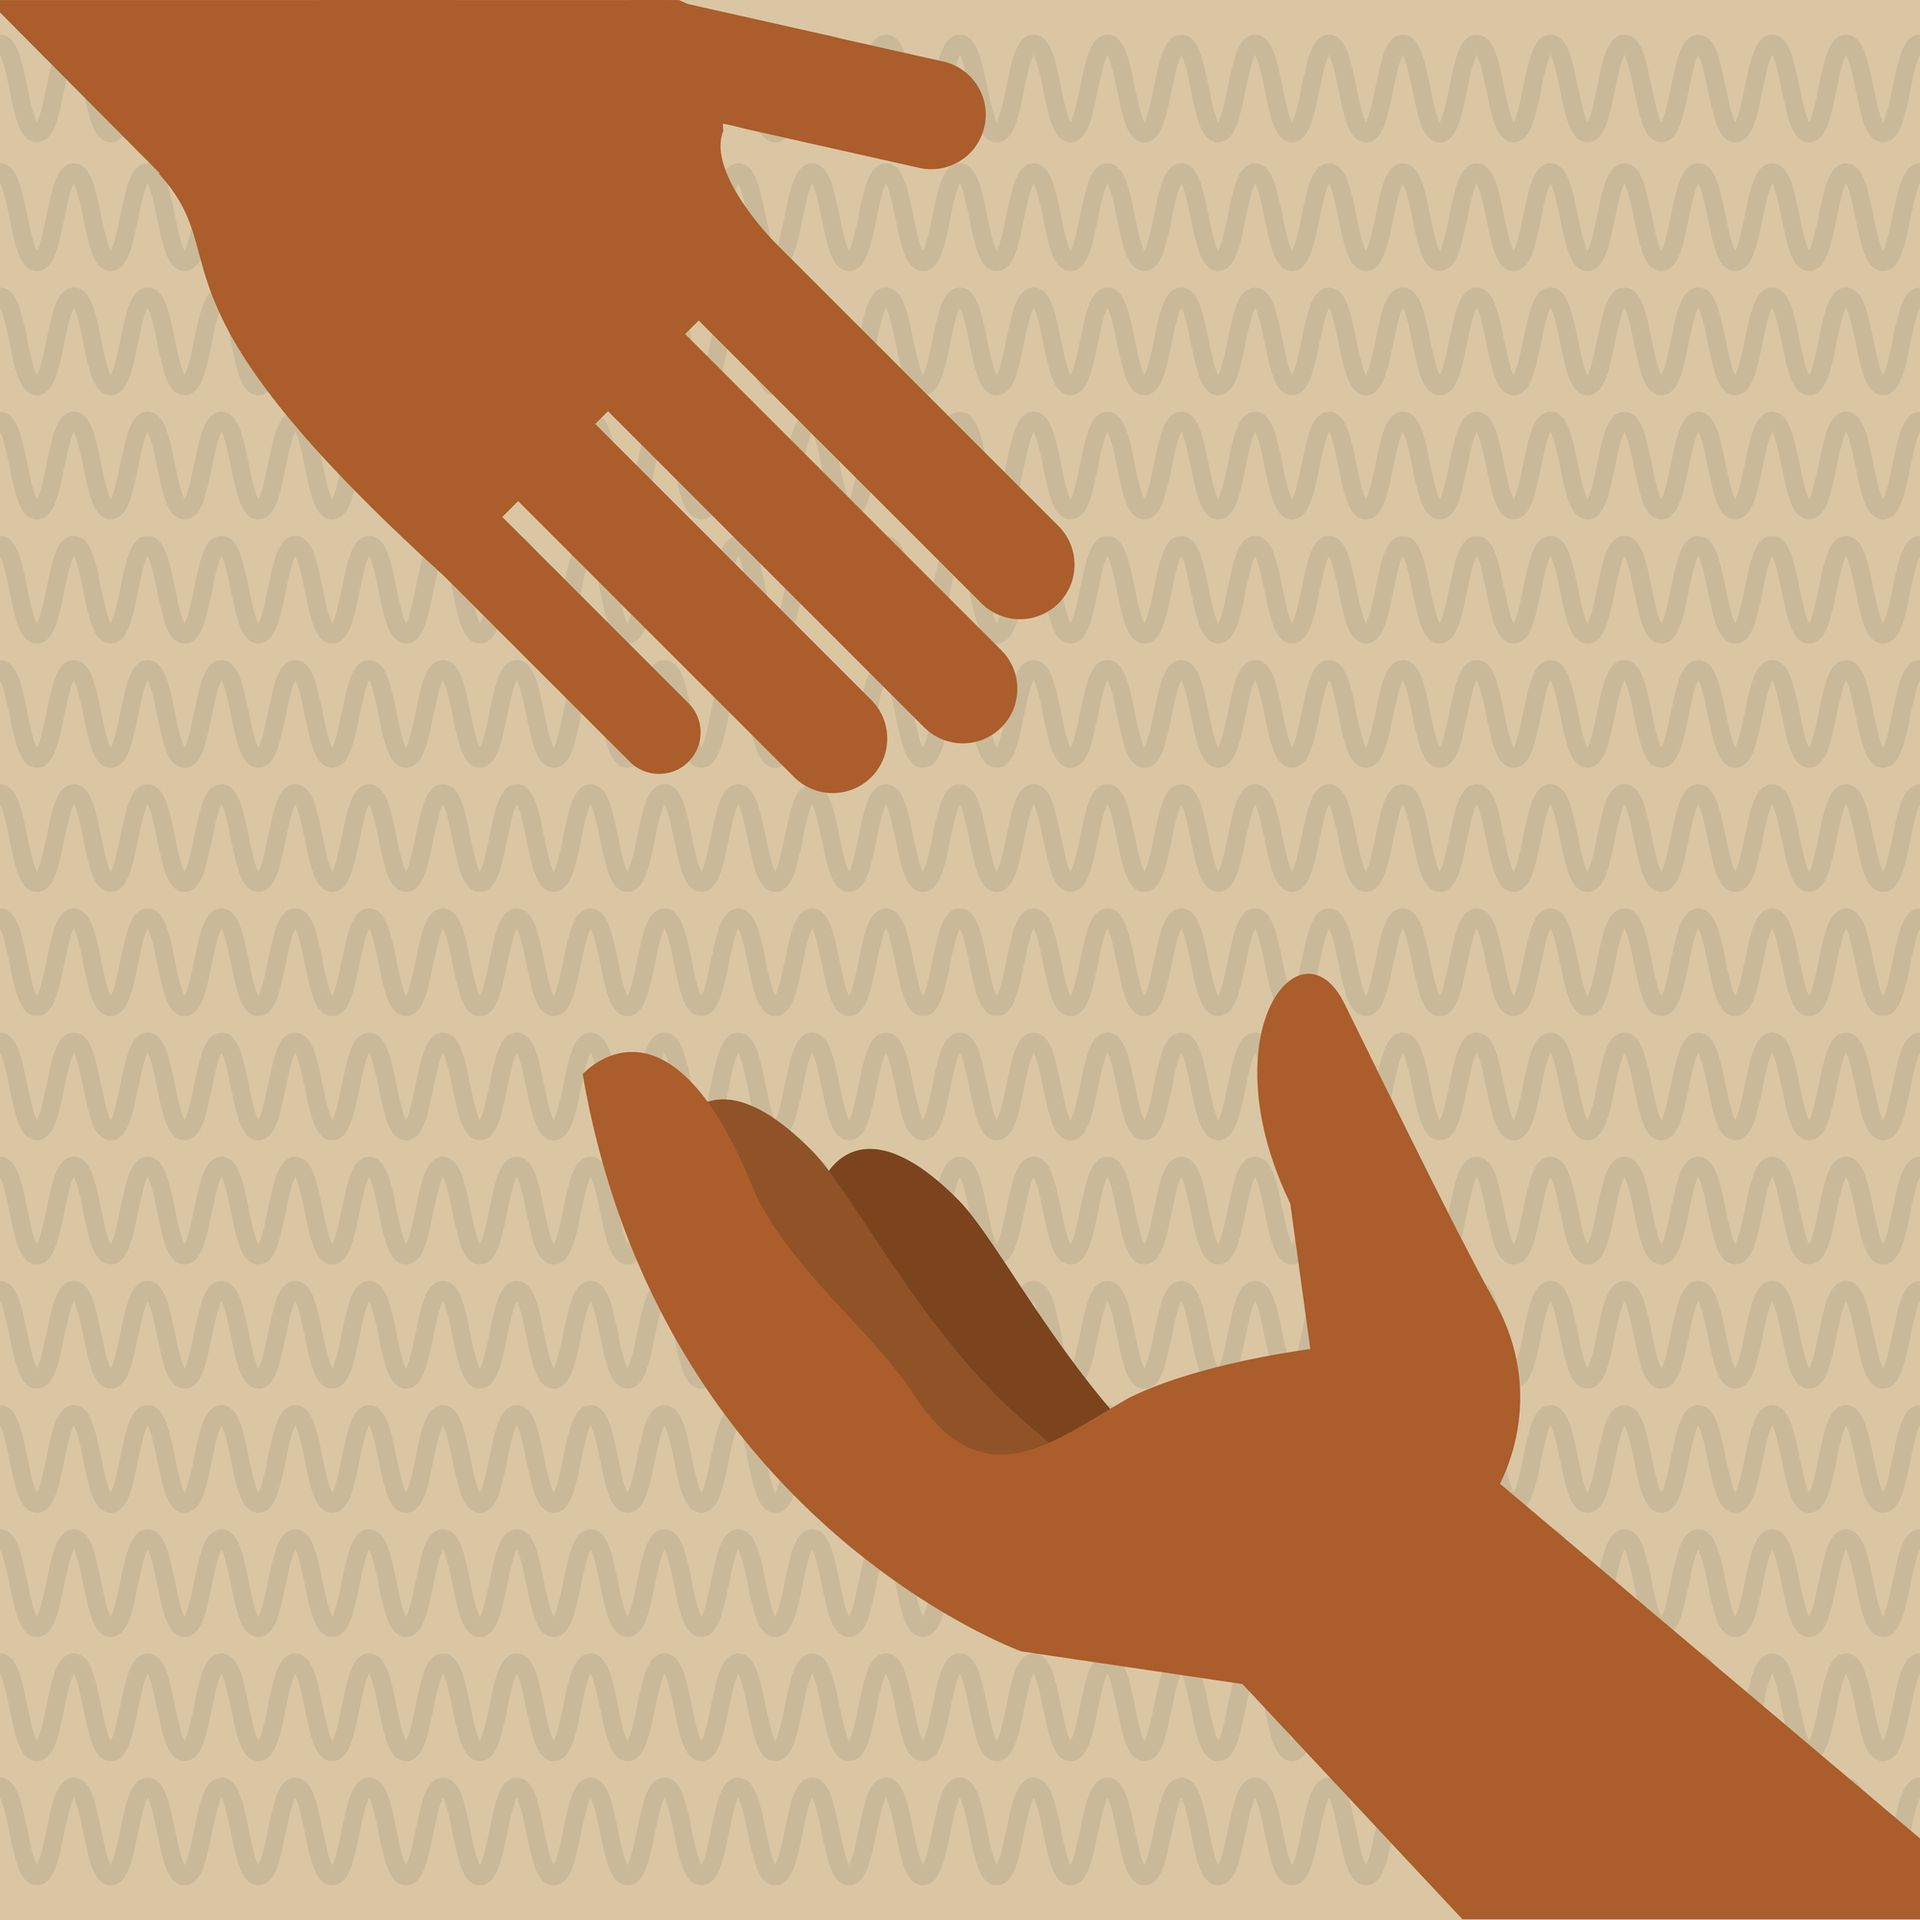 Illustratie van twee uitgestoken bruine handen die elkaar helpen ter illustratie van hulpwerkwoorden in teksten.